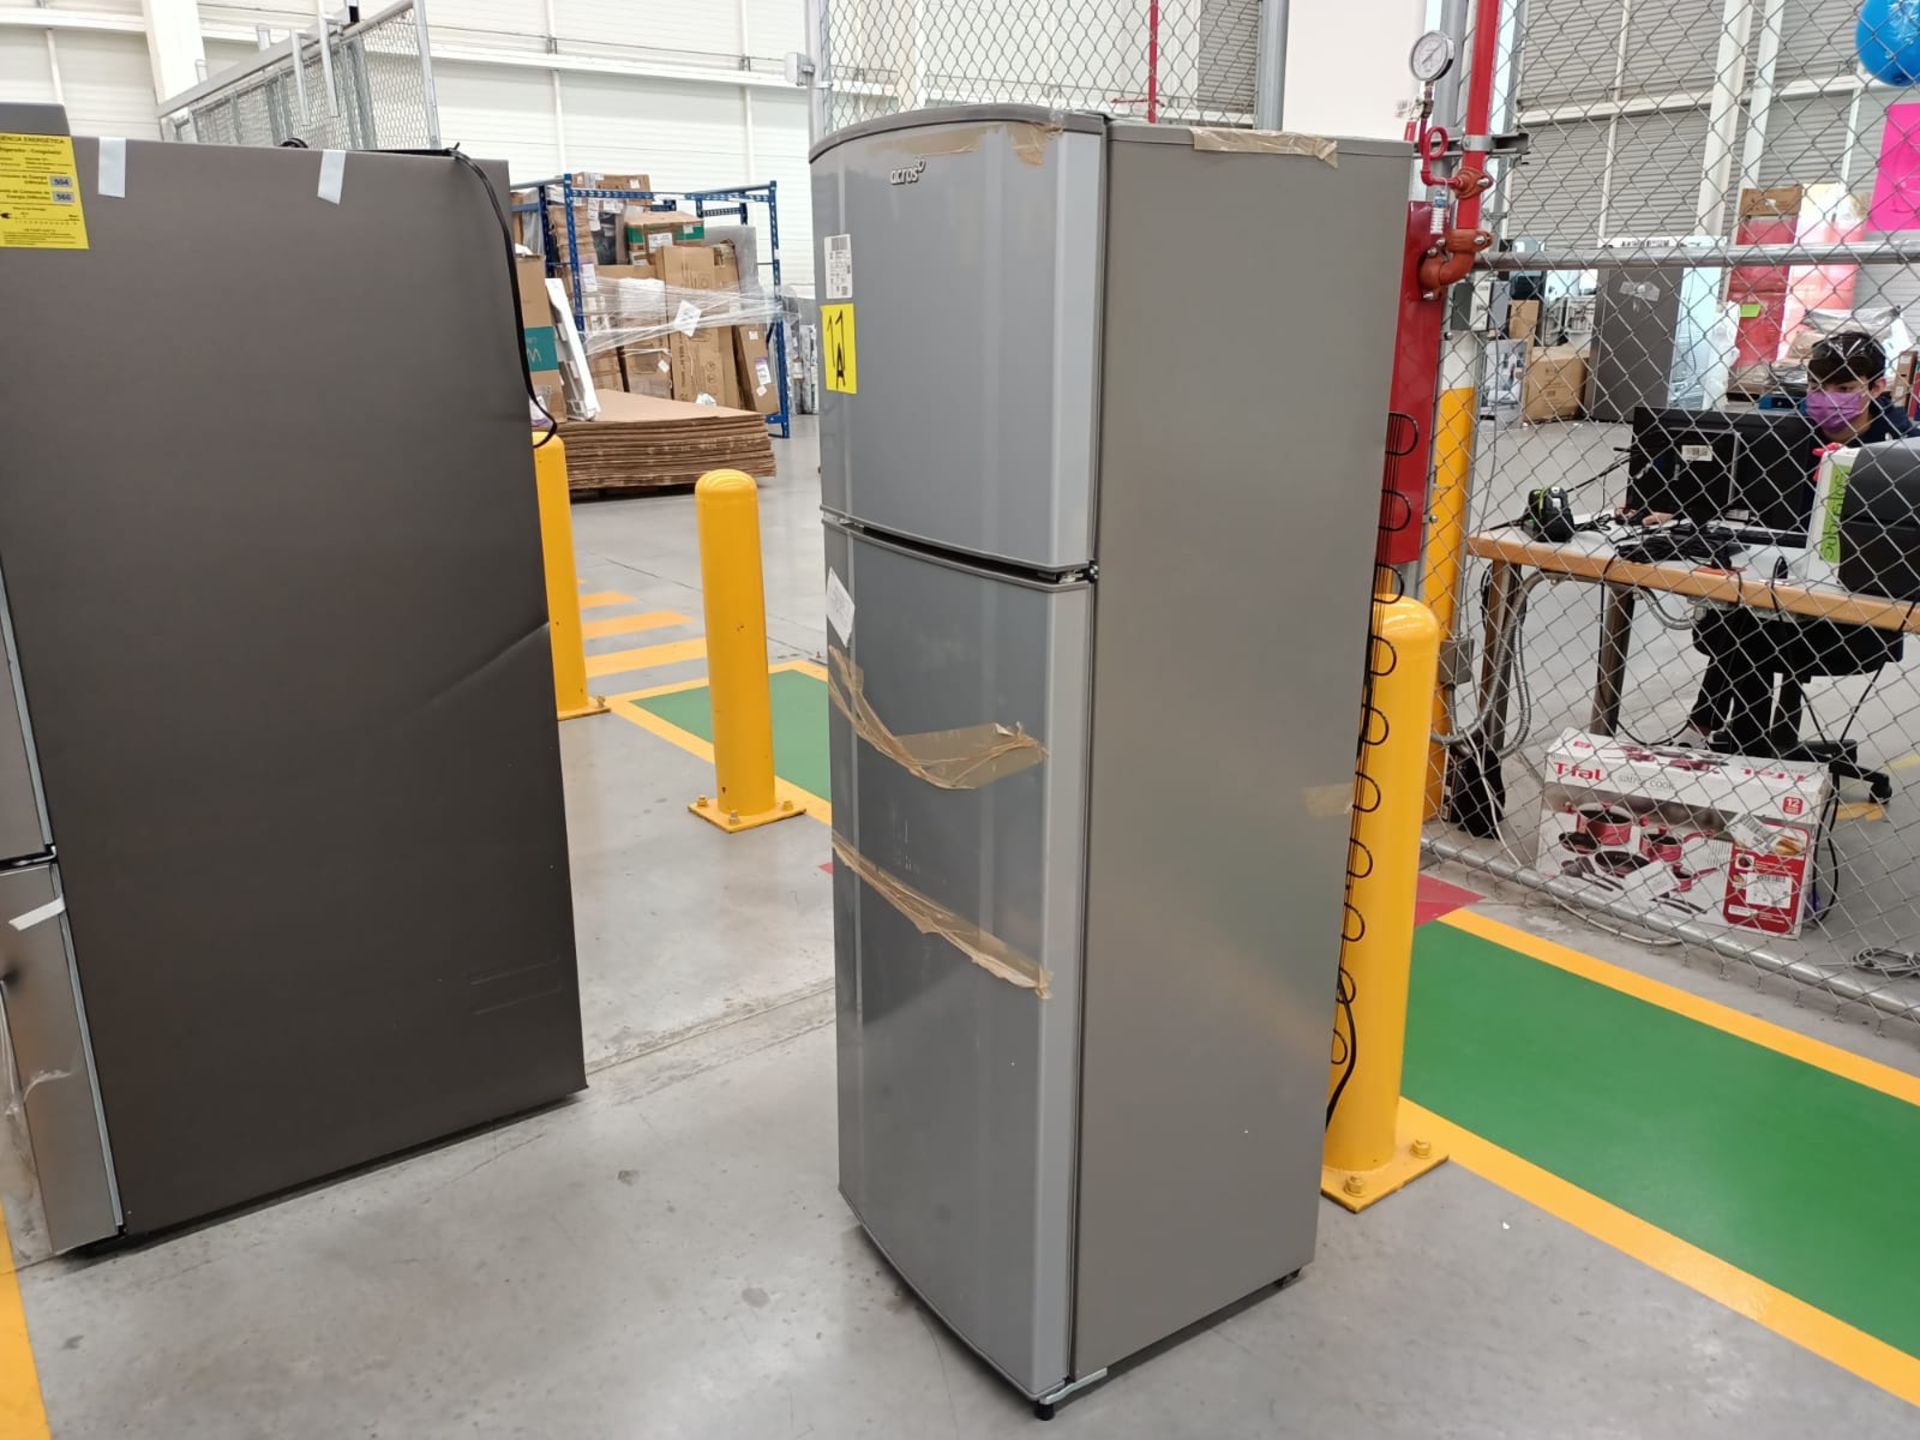 Lote de 2 refrigeradores incluye: 1 refrigerador marca Samsung, modelo RF22A4010S9/EM - Image 27 of 51